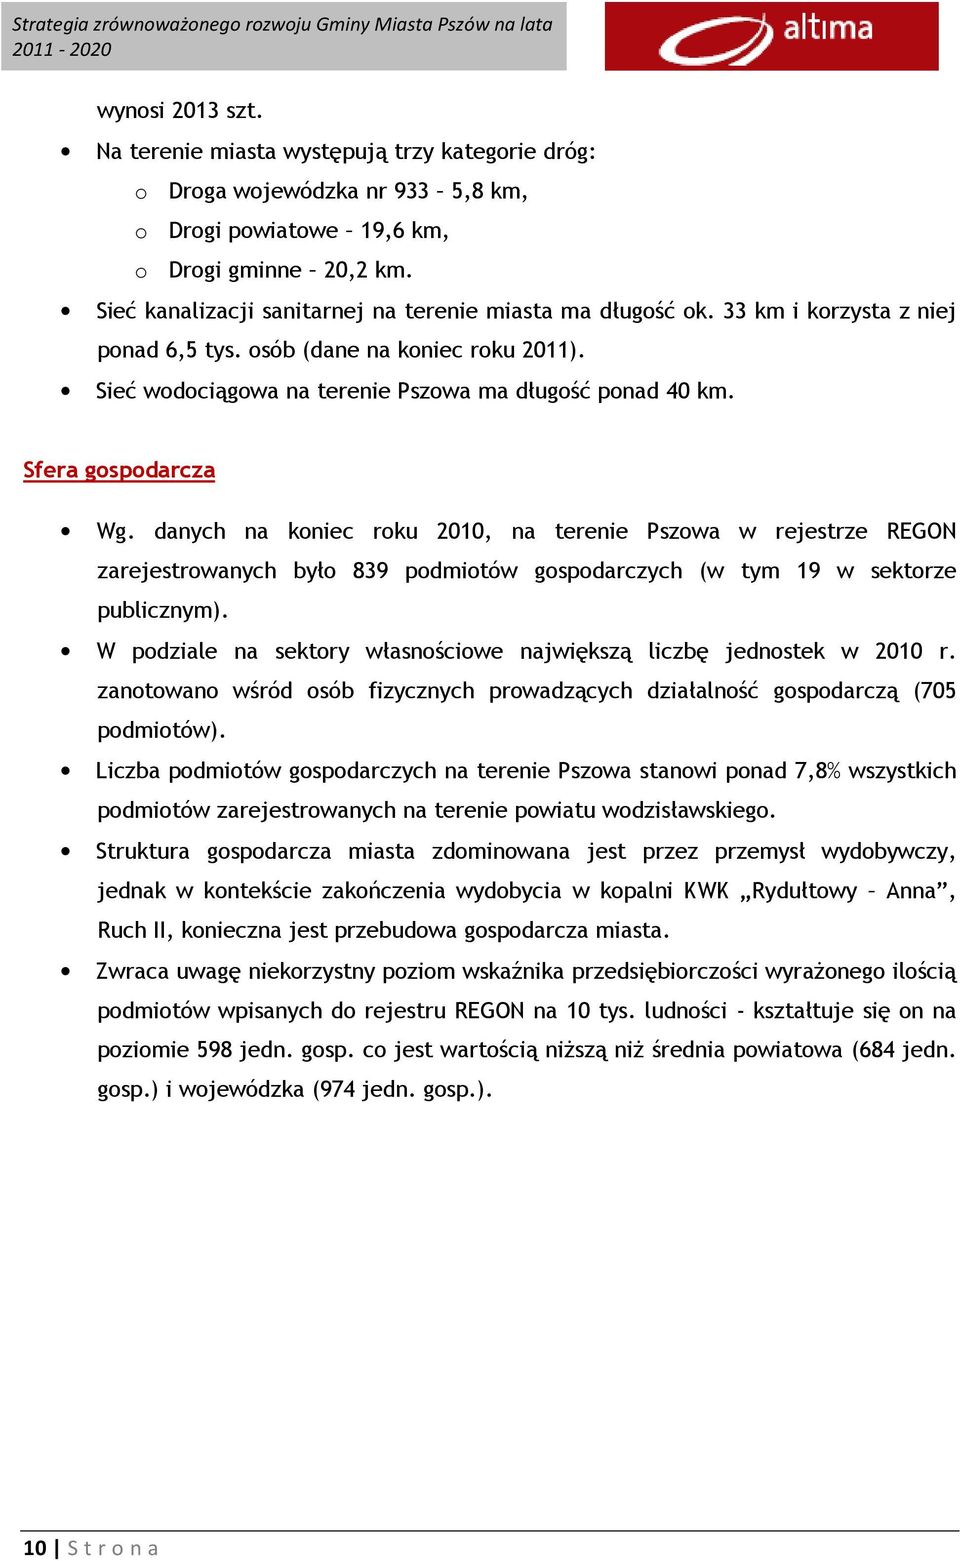 Sfera gospodarcza Wg. danych na koniec roku 2010, na terenie Pszowa w rejestrze REGON zarejestrowanych było 839 podmiotów gospodarczych (w tym 19 w sektorze publicznym).